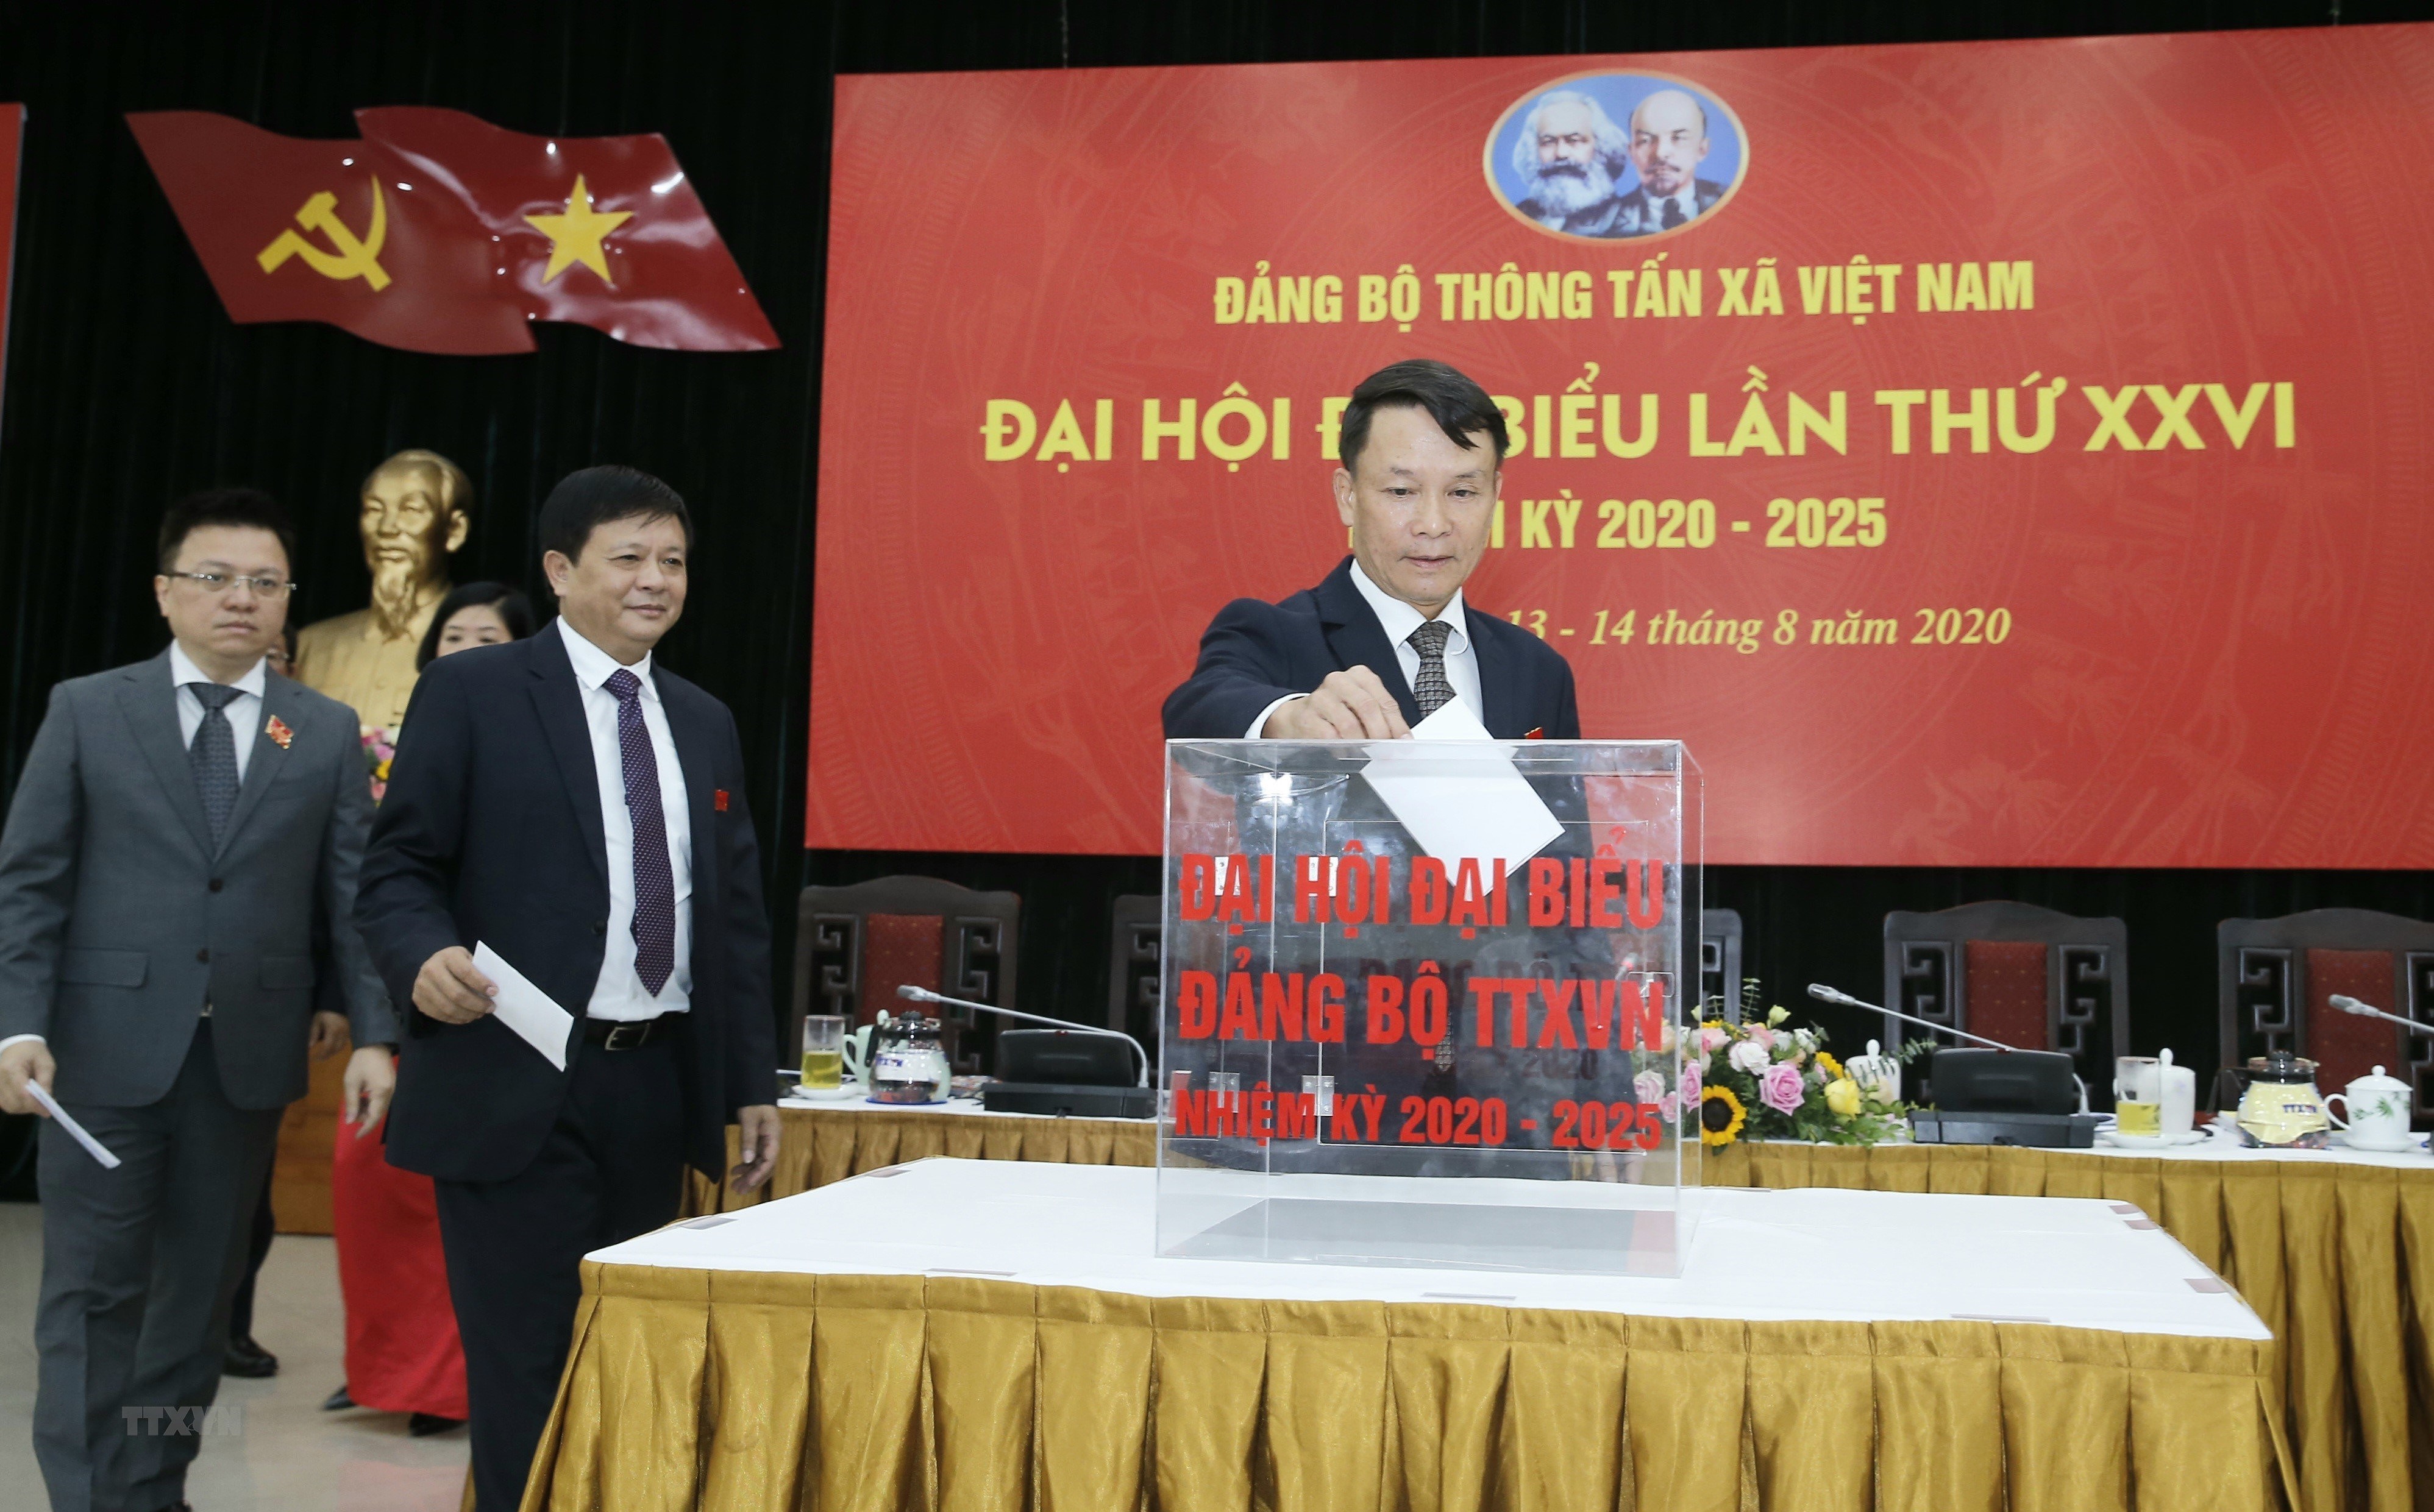 [Photo] Dai hoi dai bieu Dang bo Thong tan xa Viet Nam lan thu XXVI hinh anh 13